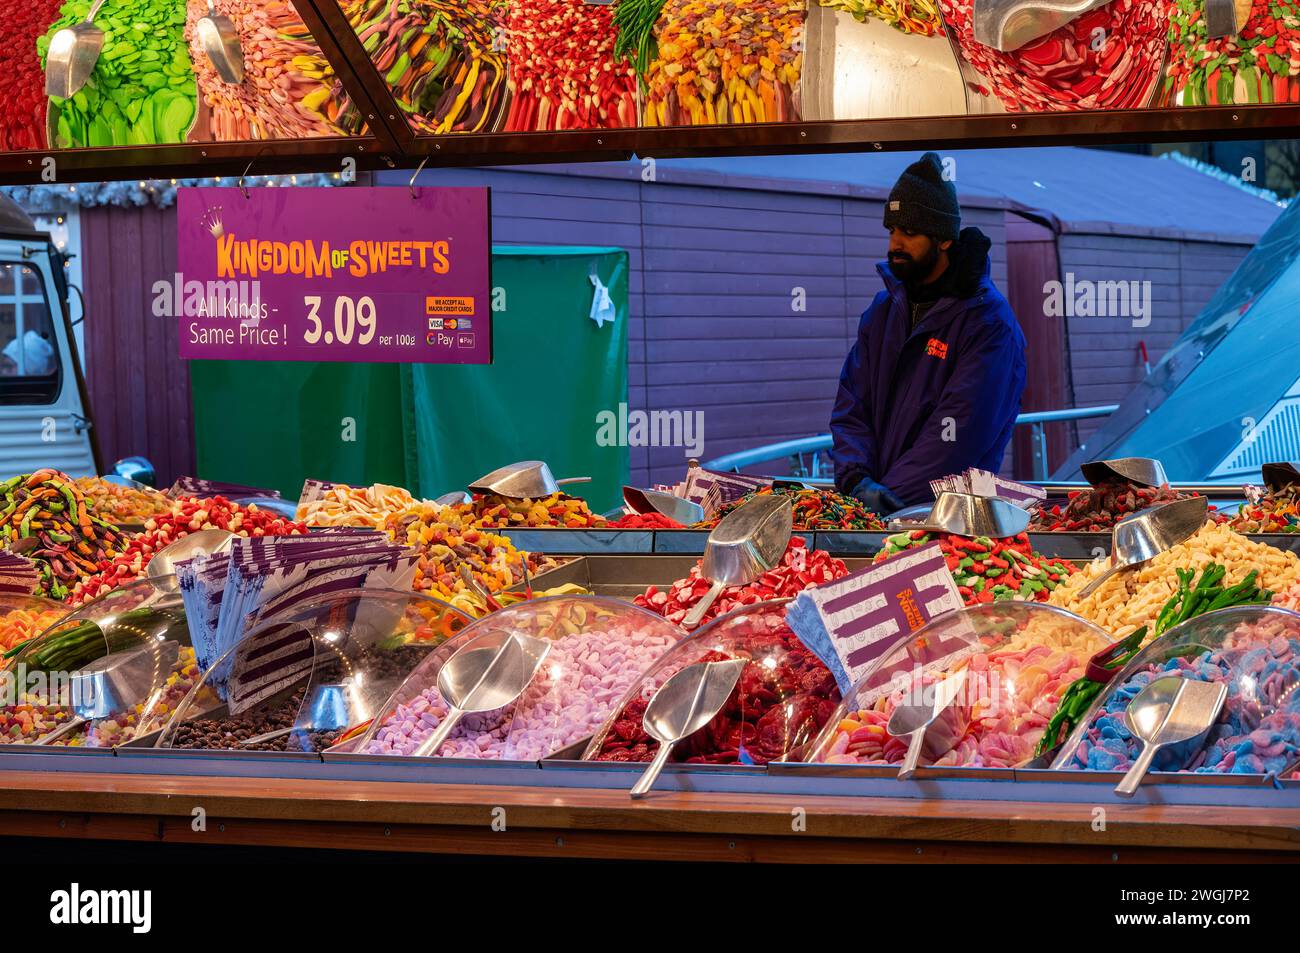 Mercato del Regno dei dolci al mercatino di Natale di Glasgow. Foto Stock